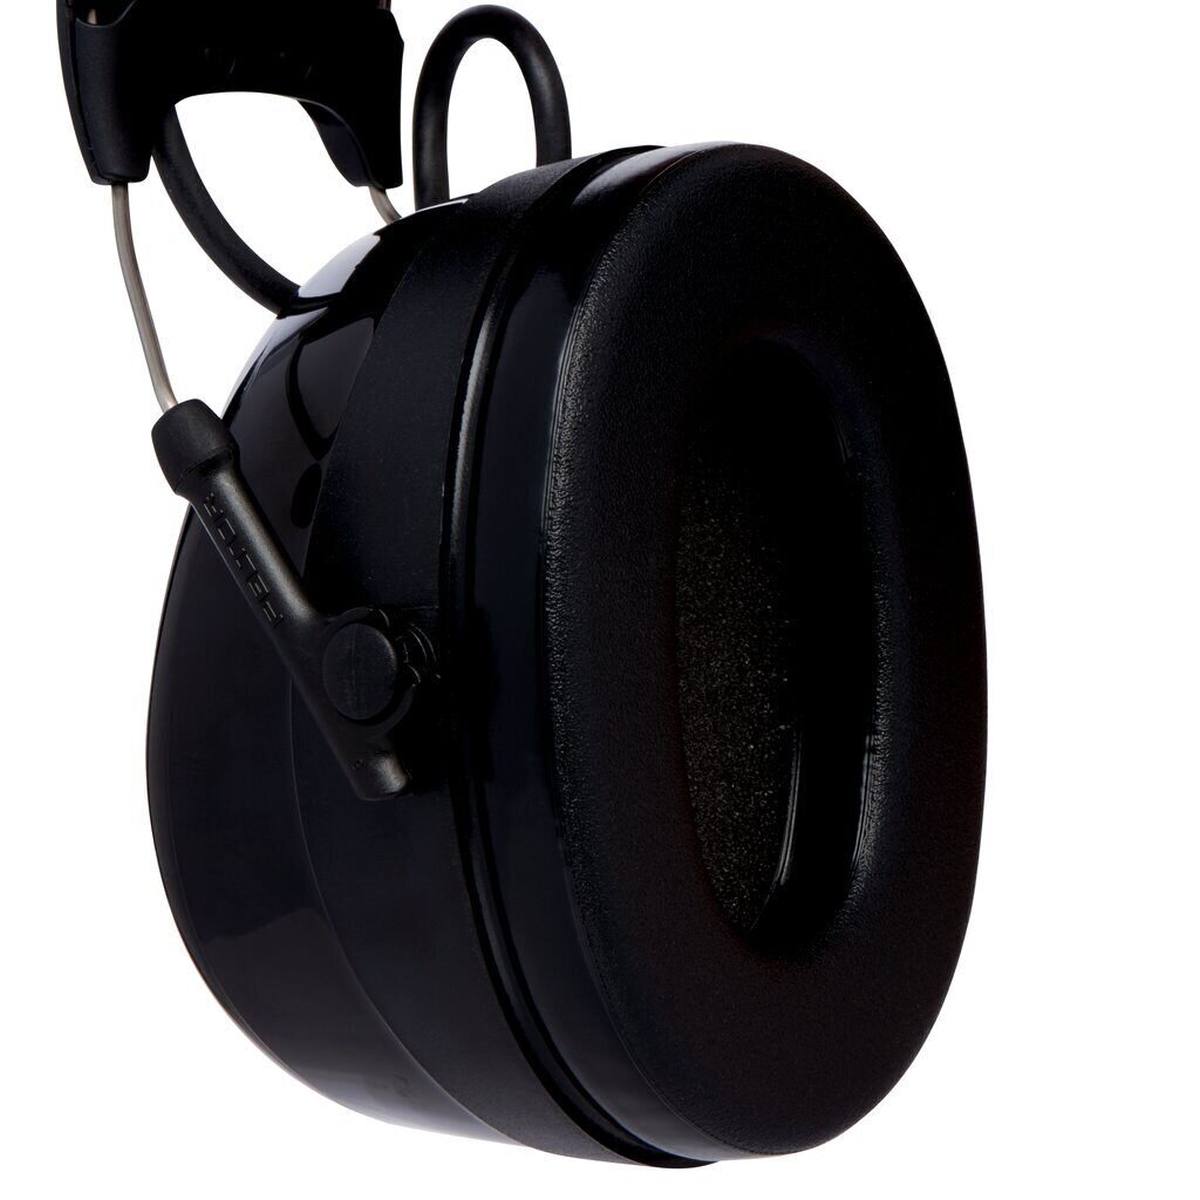 3M PELTOR ProTac III headset, zwart, helmuitvoering, met actieve, niveau-afhankelijke dempingstechnologie voor het waarnemen van omgevingsgeluid, SNR=31 dB, scwar